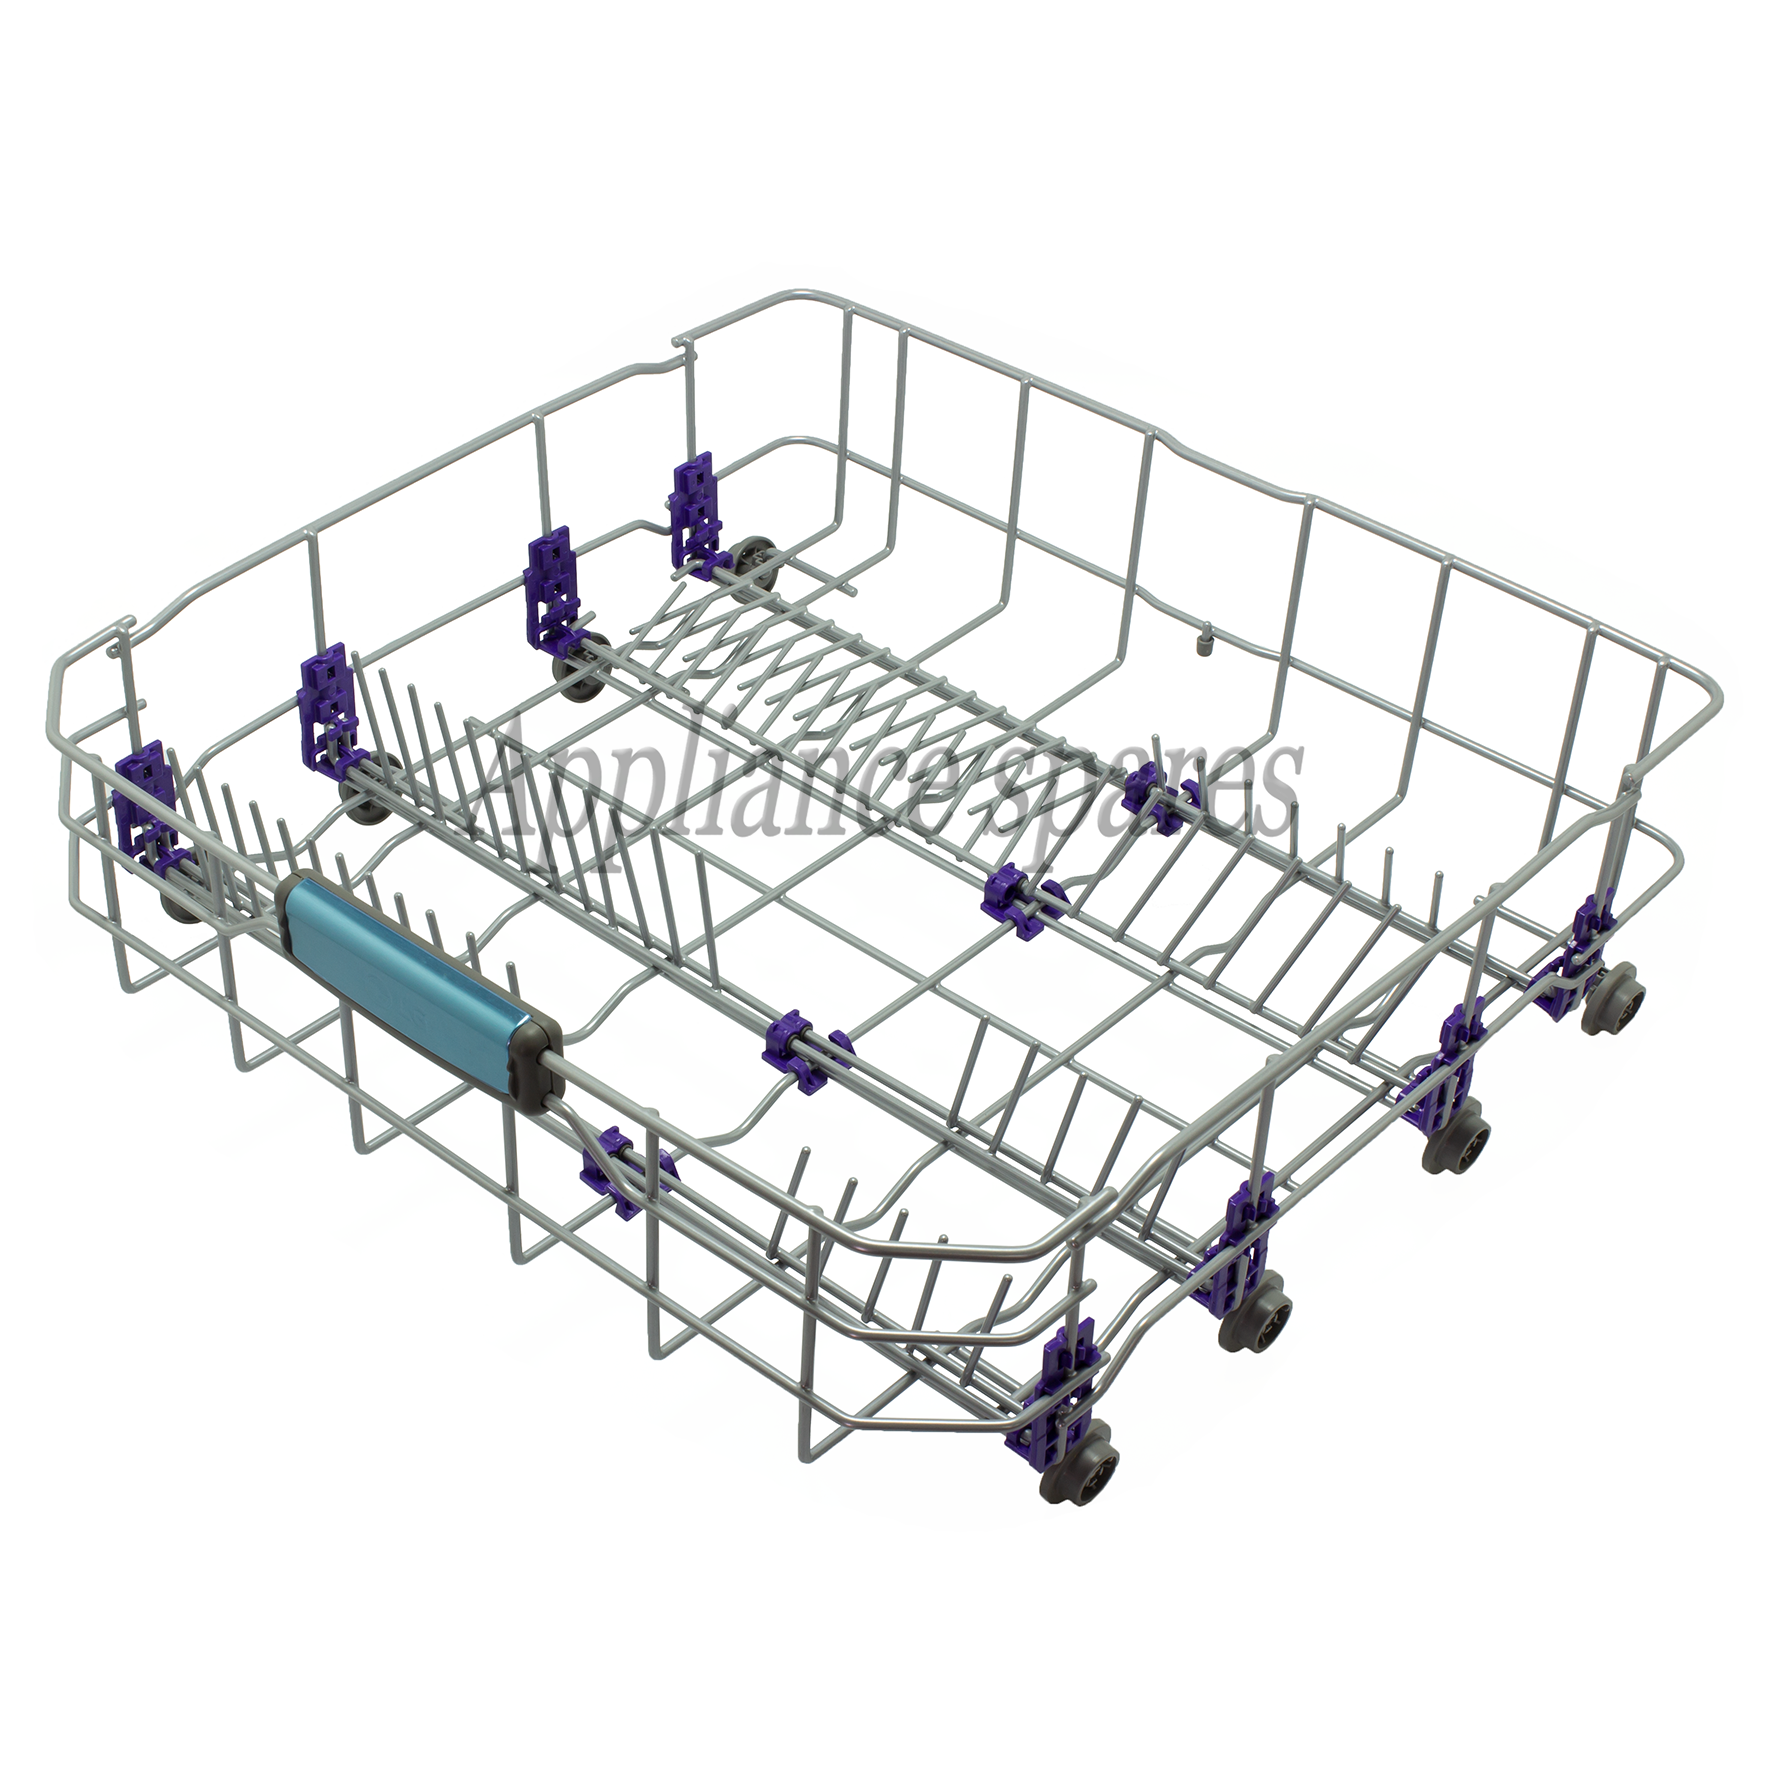 LG Dishwasher Lower Basket Assembly